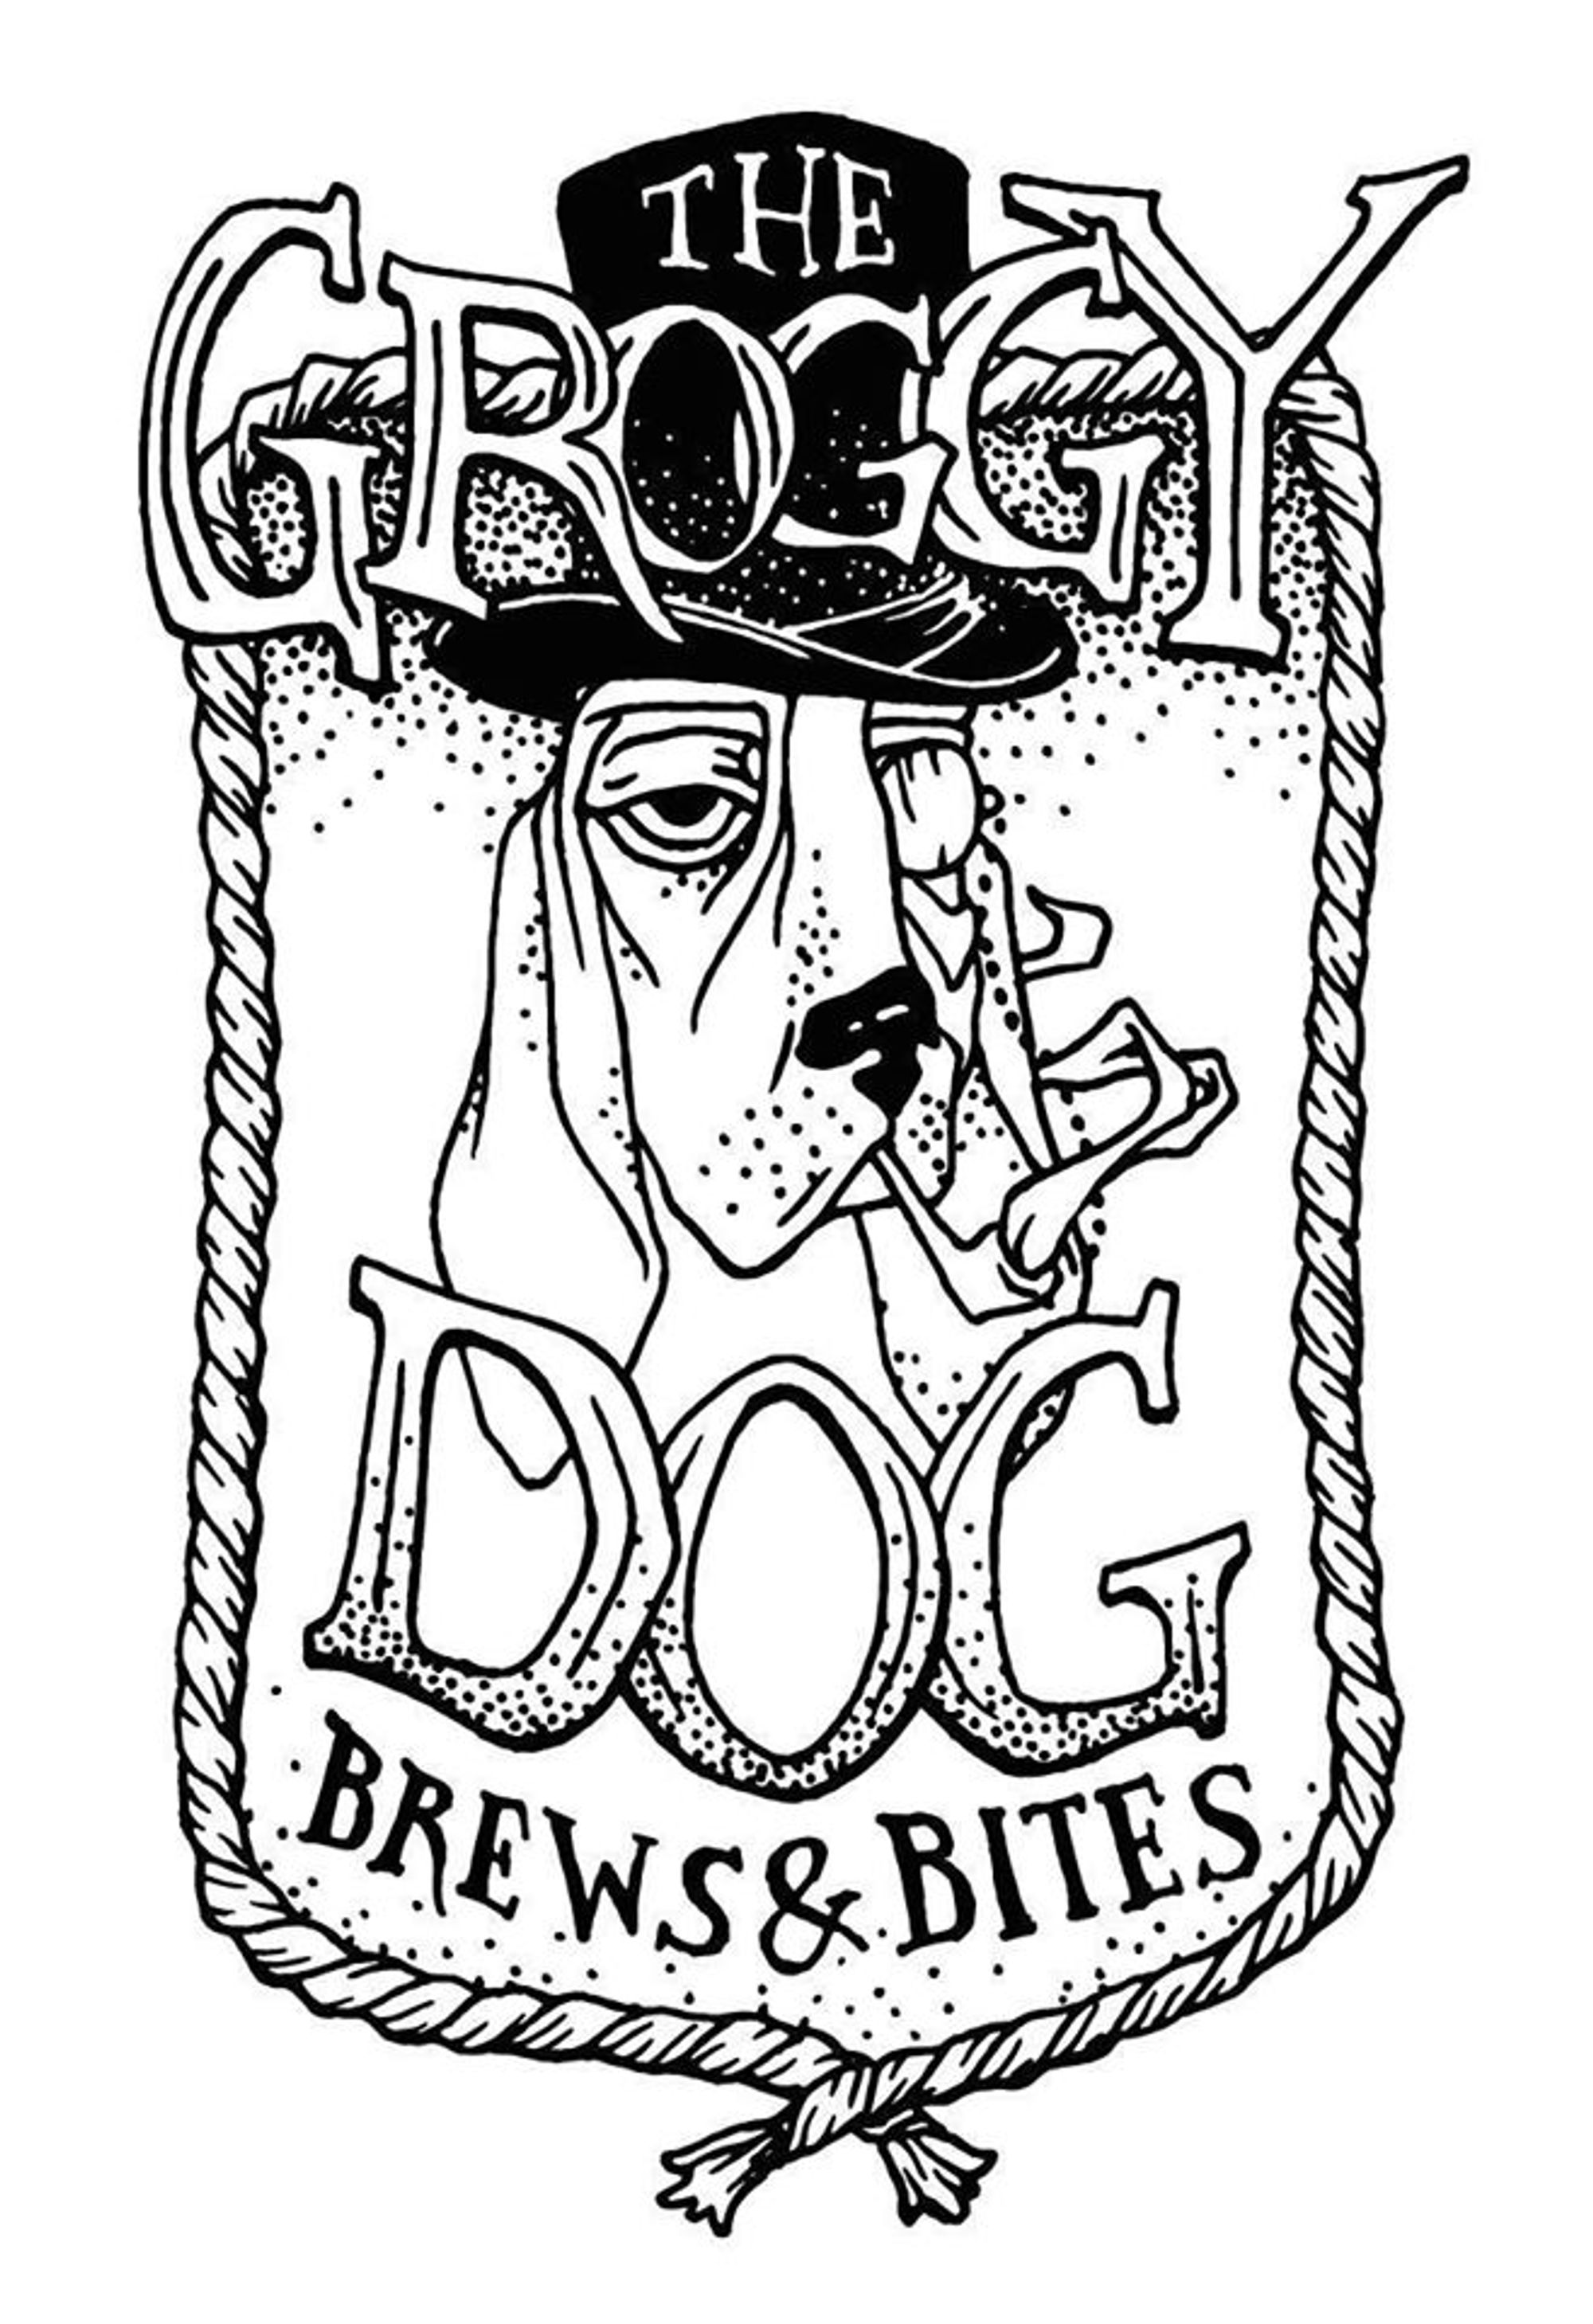 The Groggy Dog